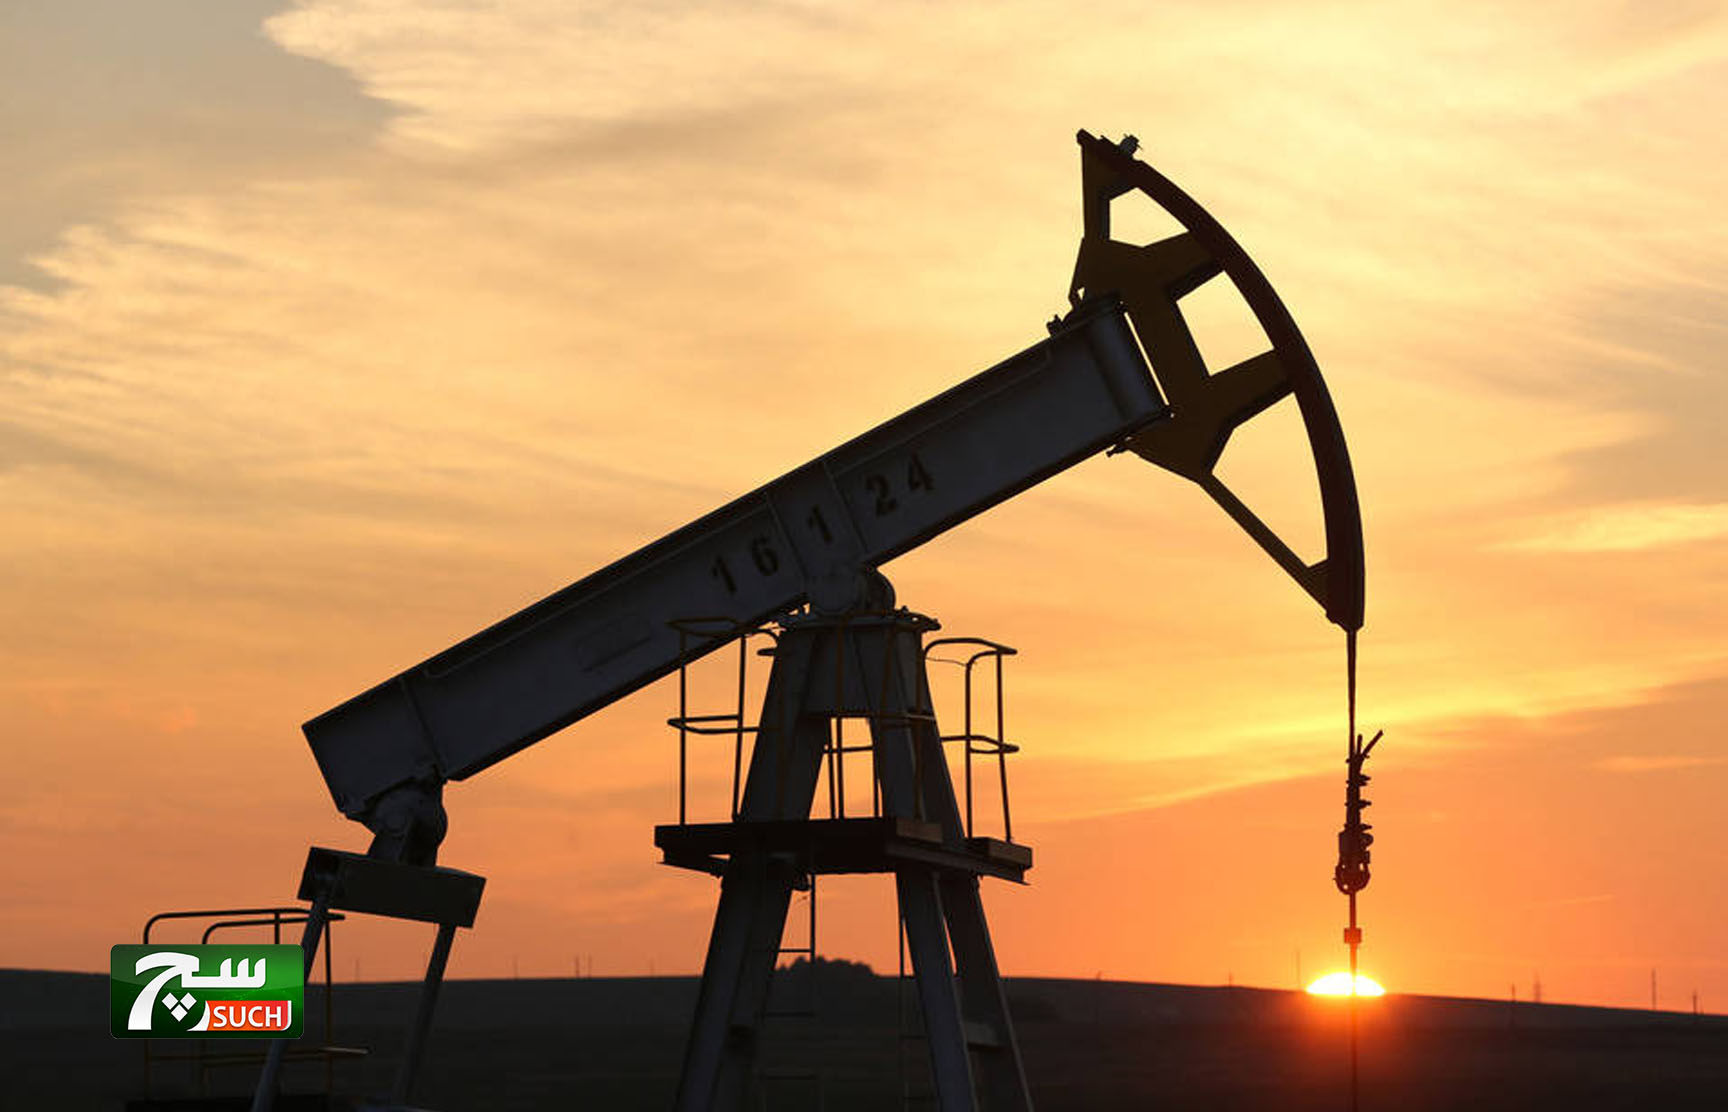 النفط يرتفع مع توقعات بخفض المخزونات الأميركيةالنفط يرتفع مع توقعات بخفض المخزونات الأميركية